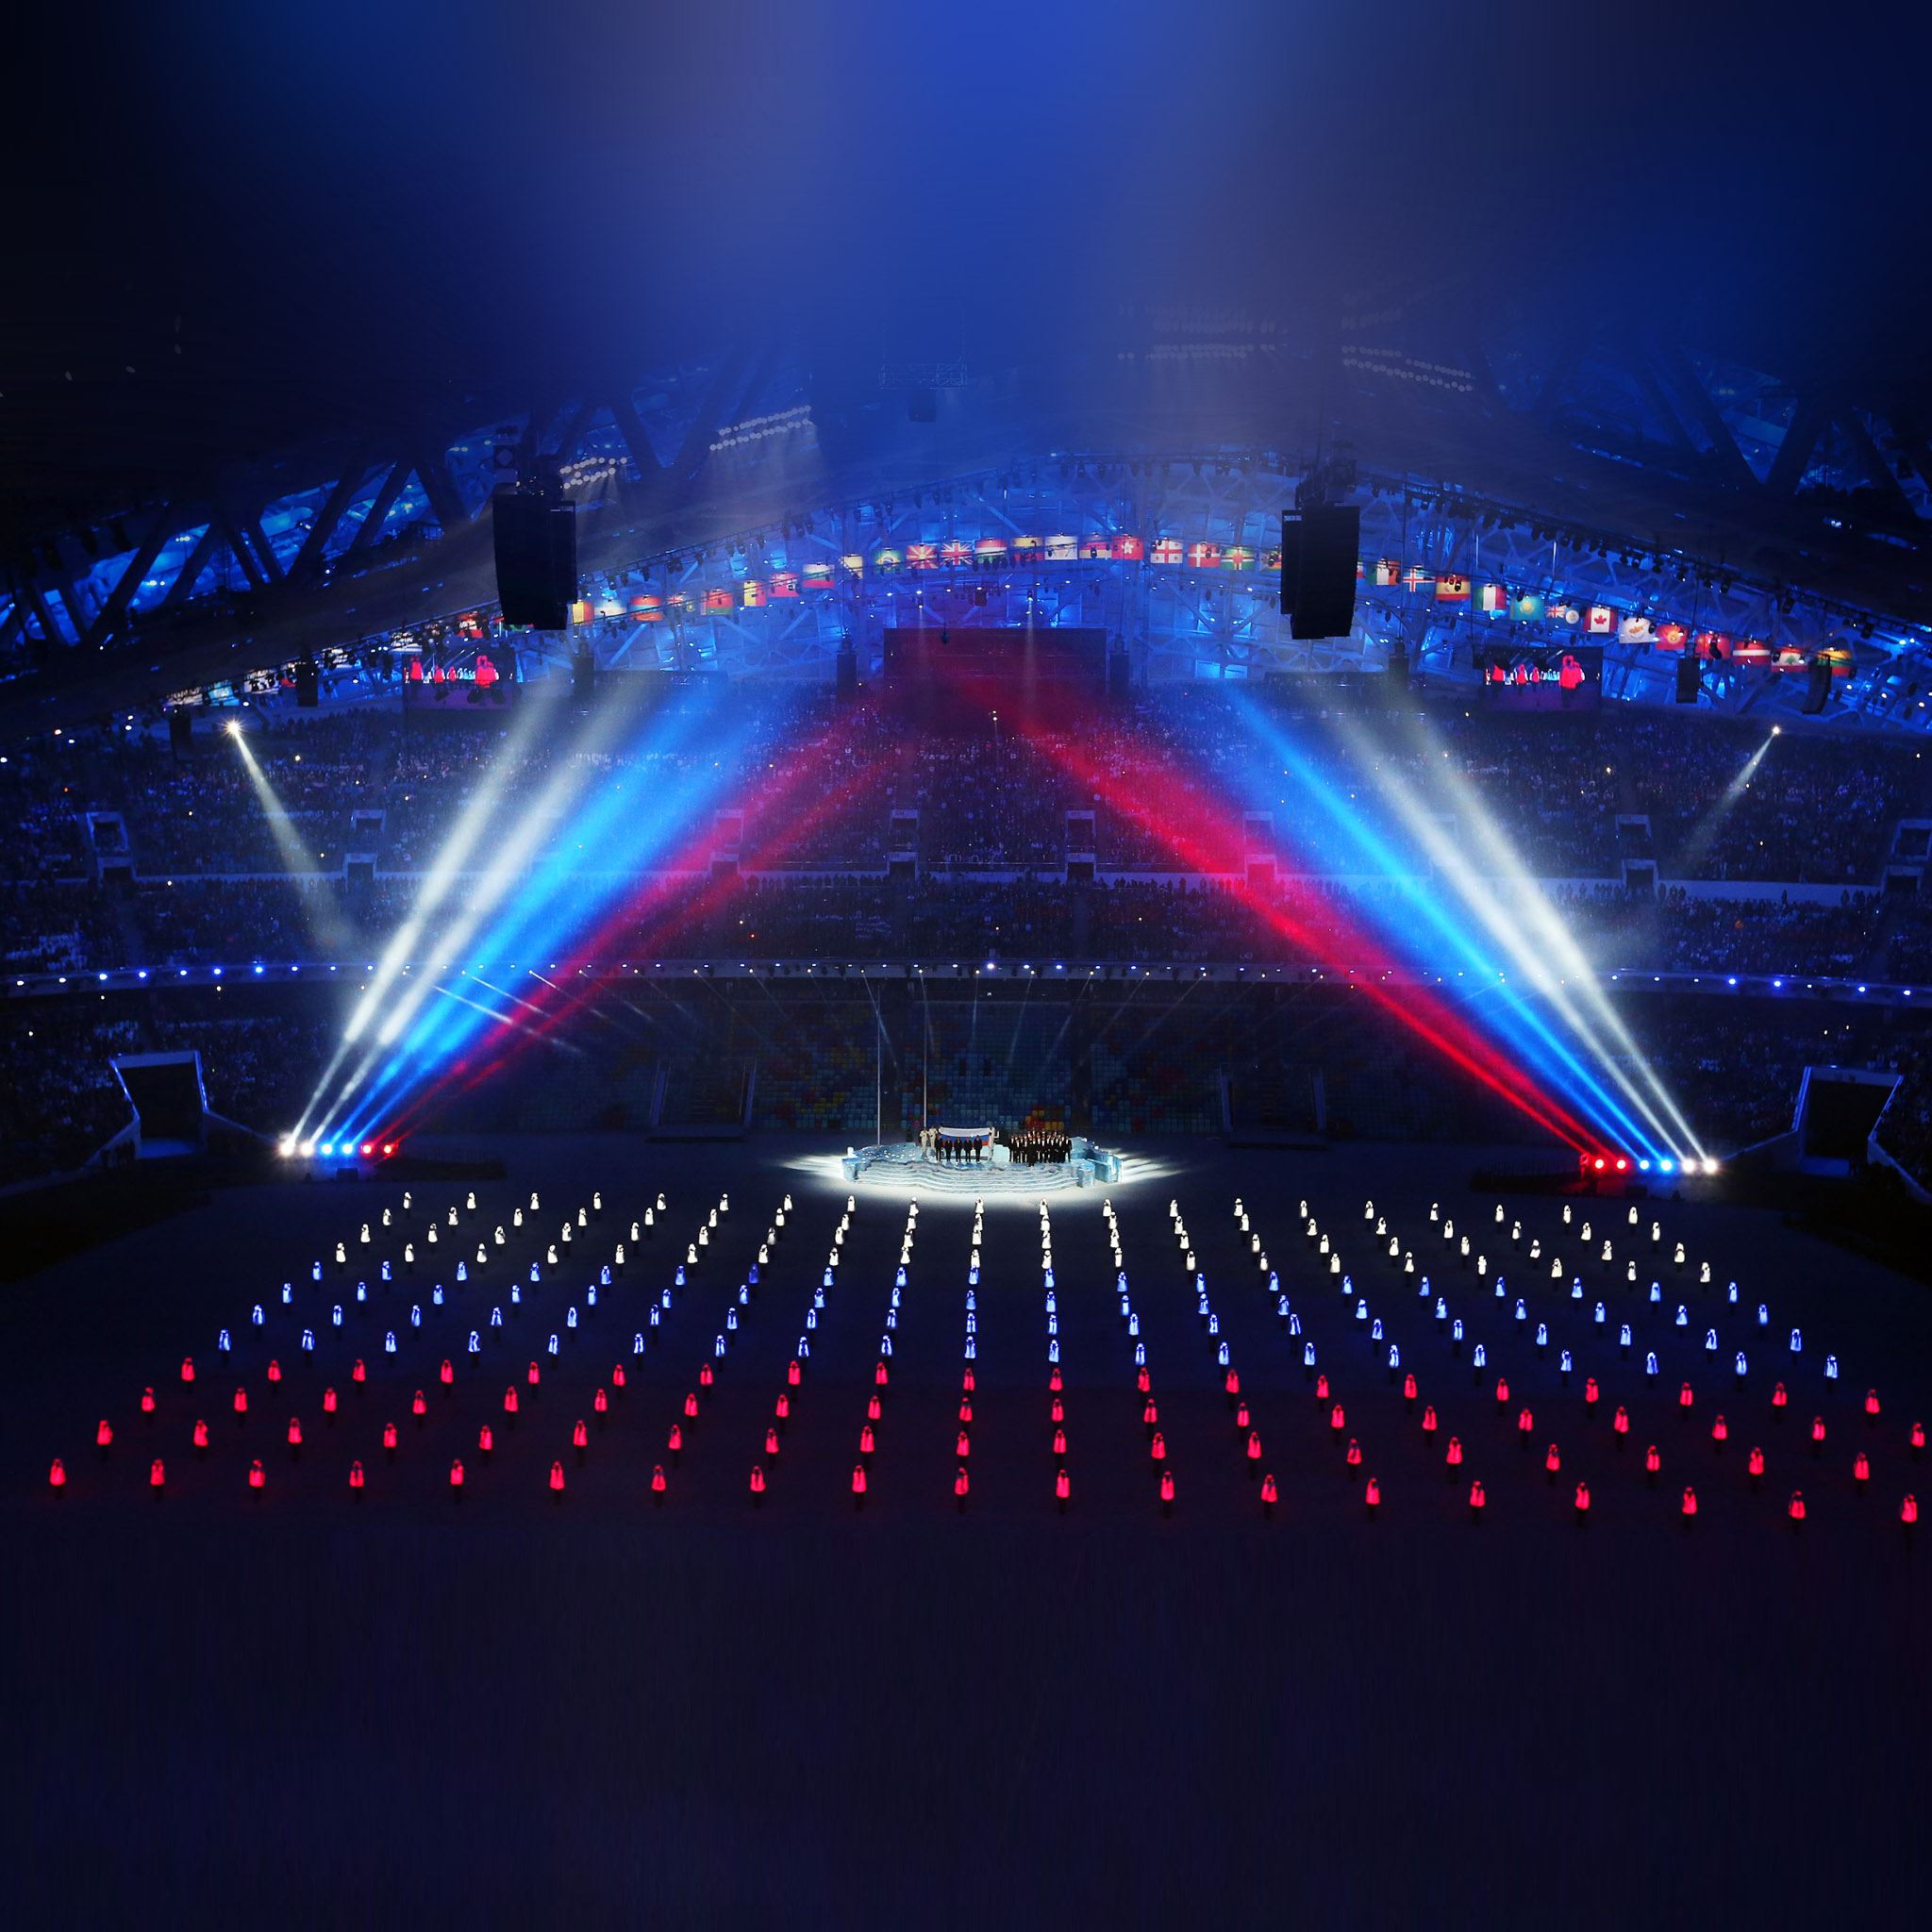 Sochi 2014 Winter Olympics Concert iPad Air wallpaper 